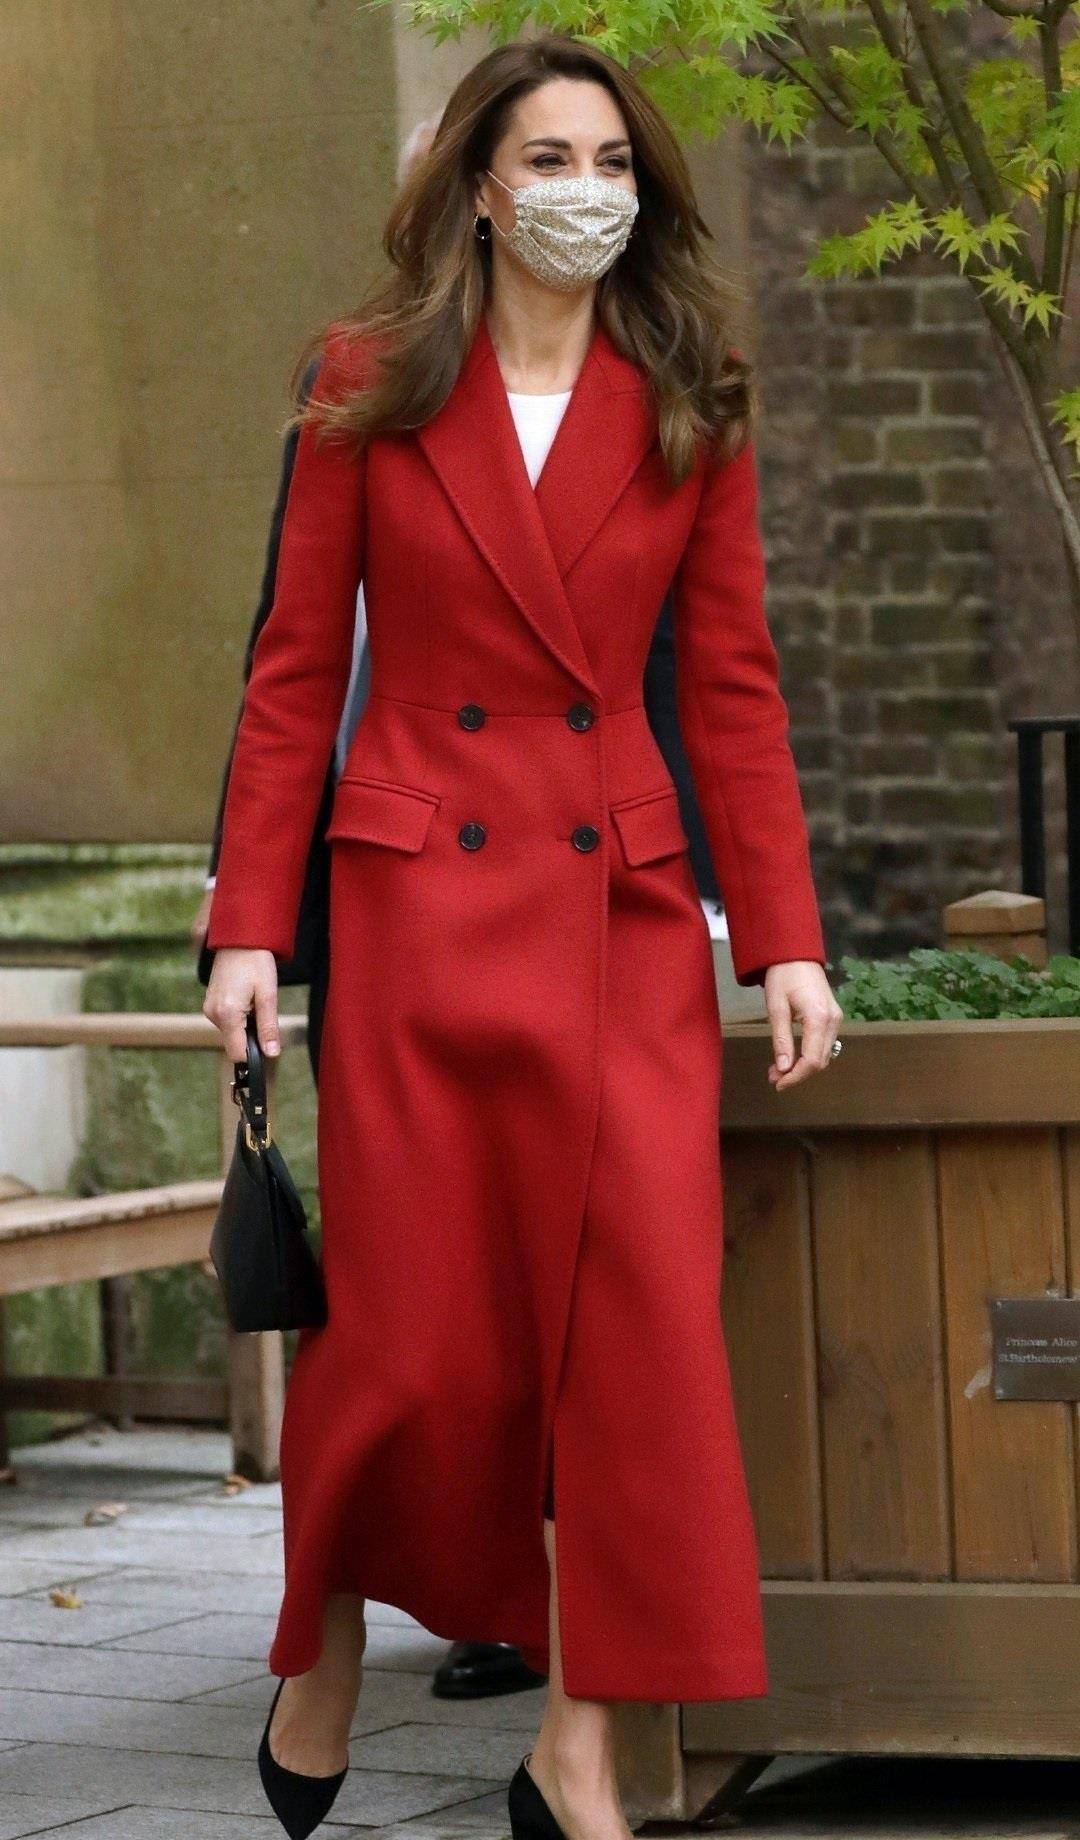 凯特王妃穿红色大衣太显高长发飘飘真迷人越看越年轻